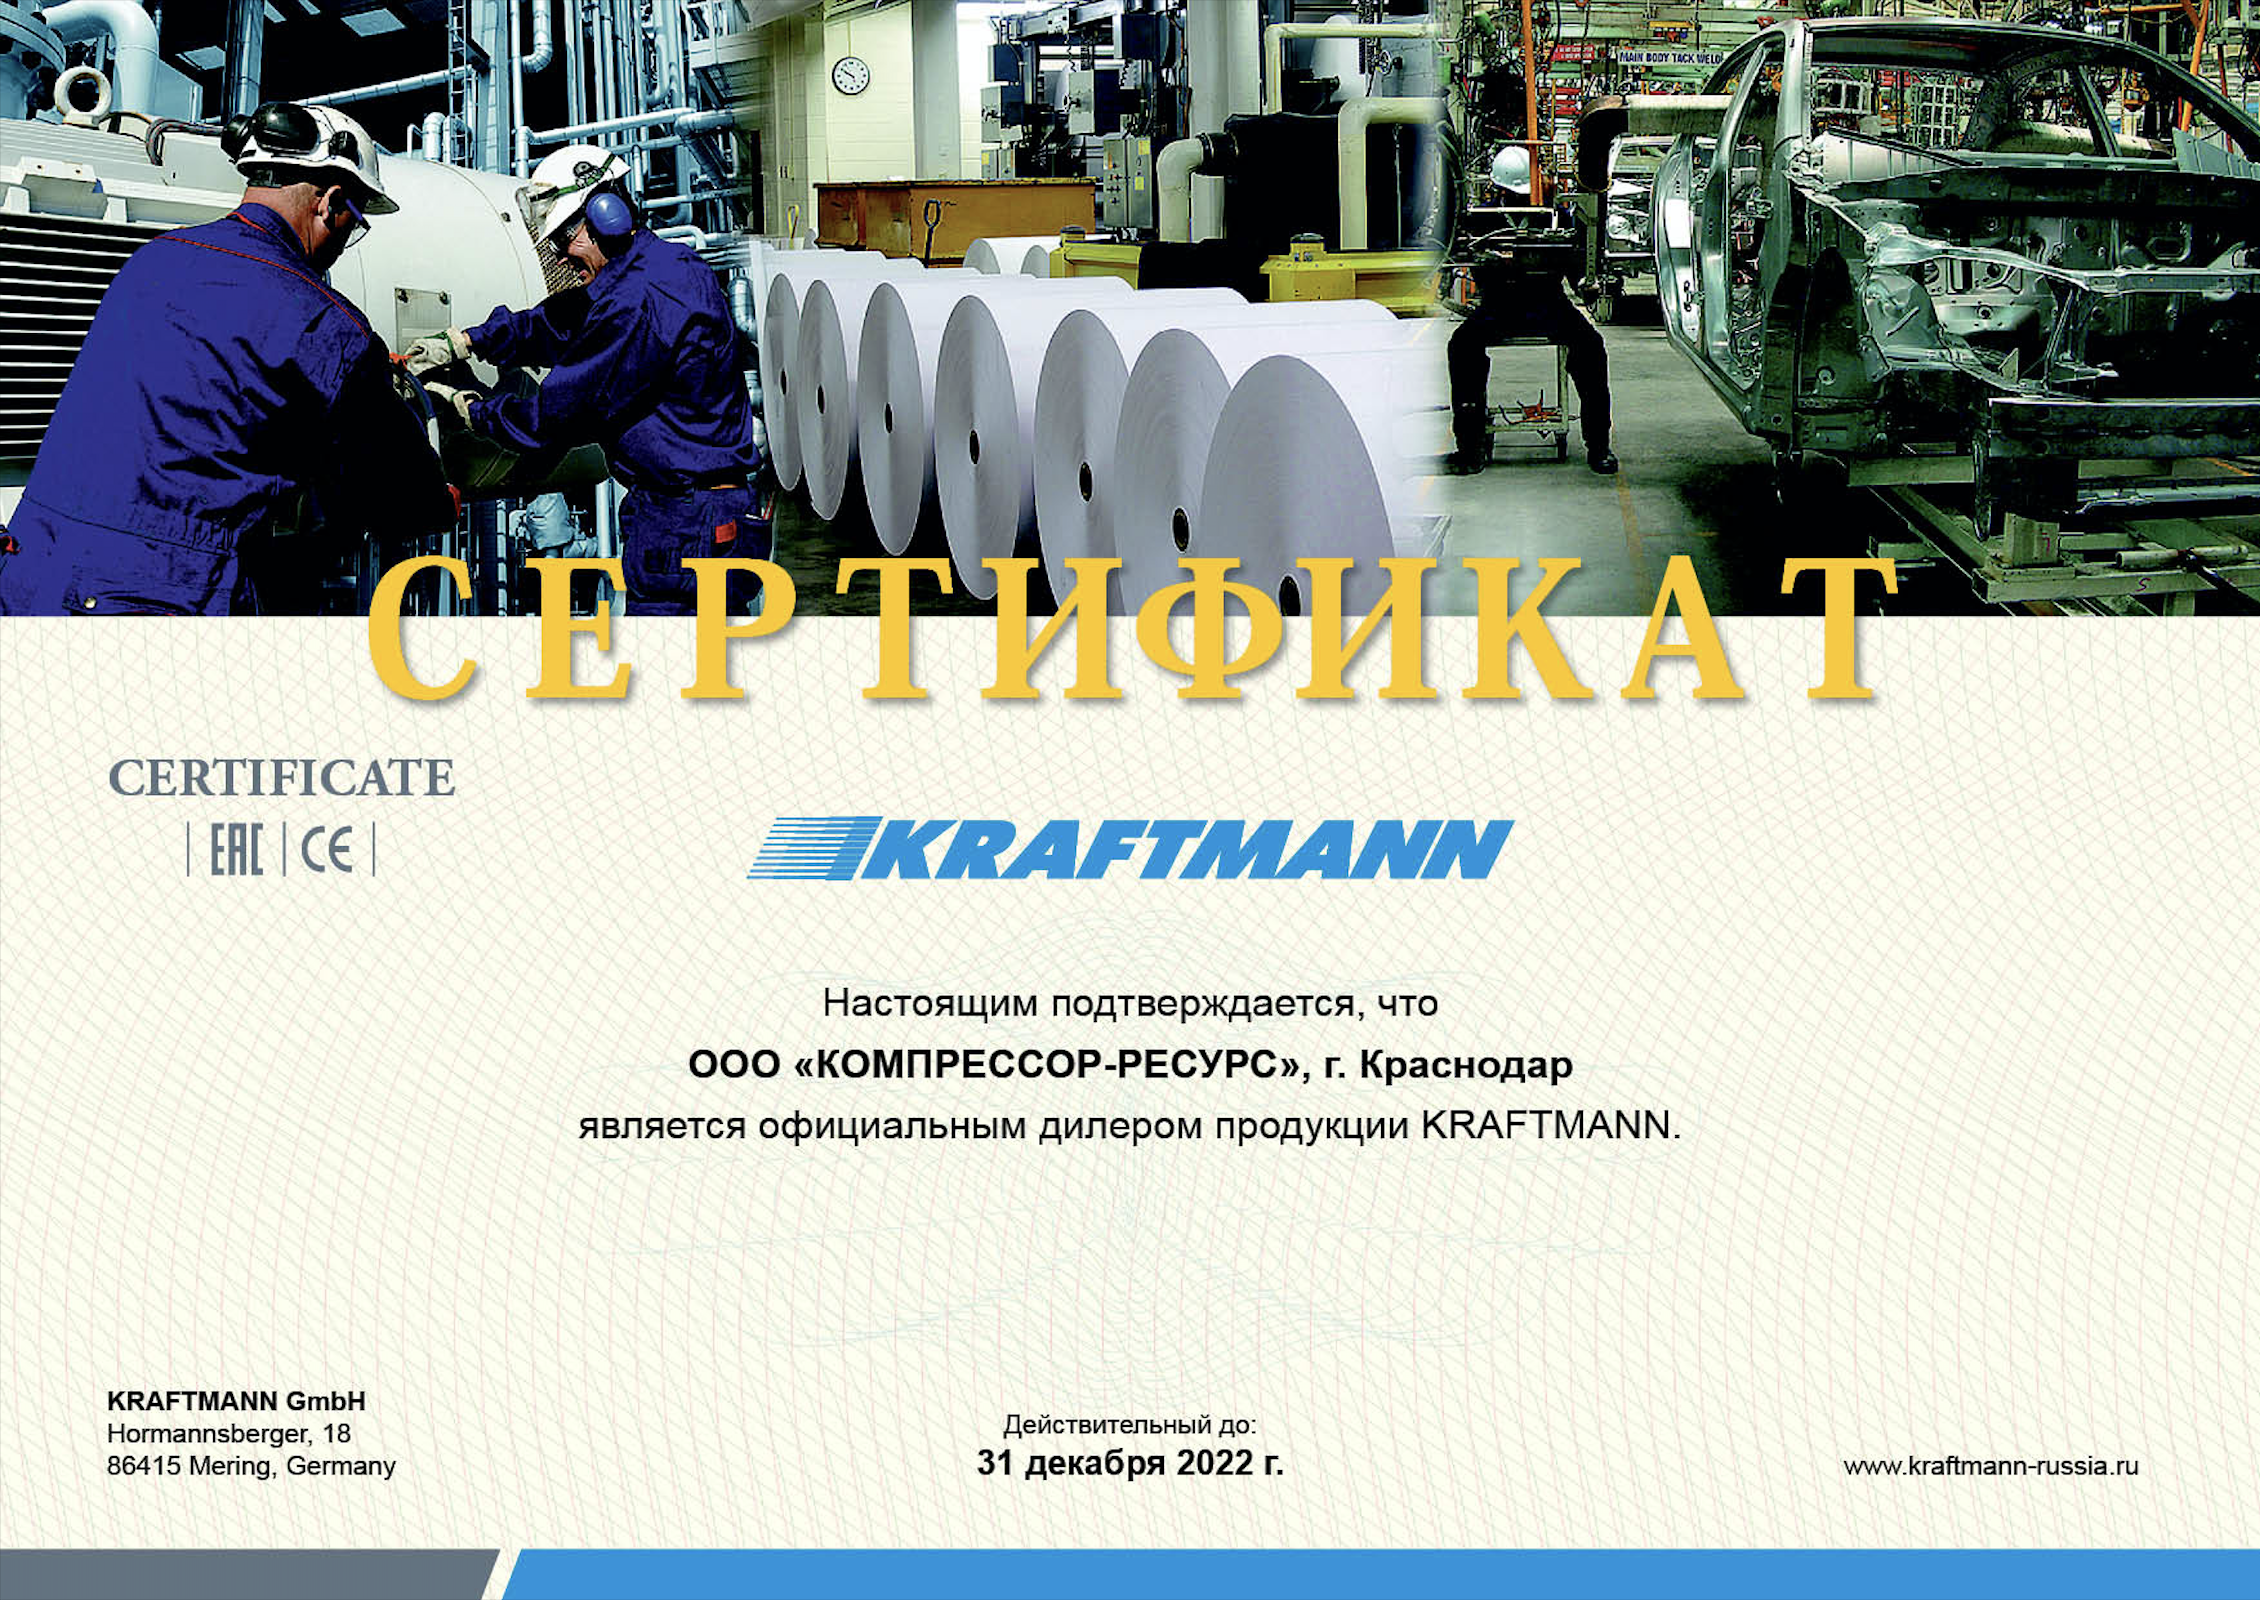 ООО "Компрессор-ресурс" является официальный представитель продукции KRAFTMANN